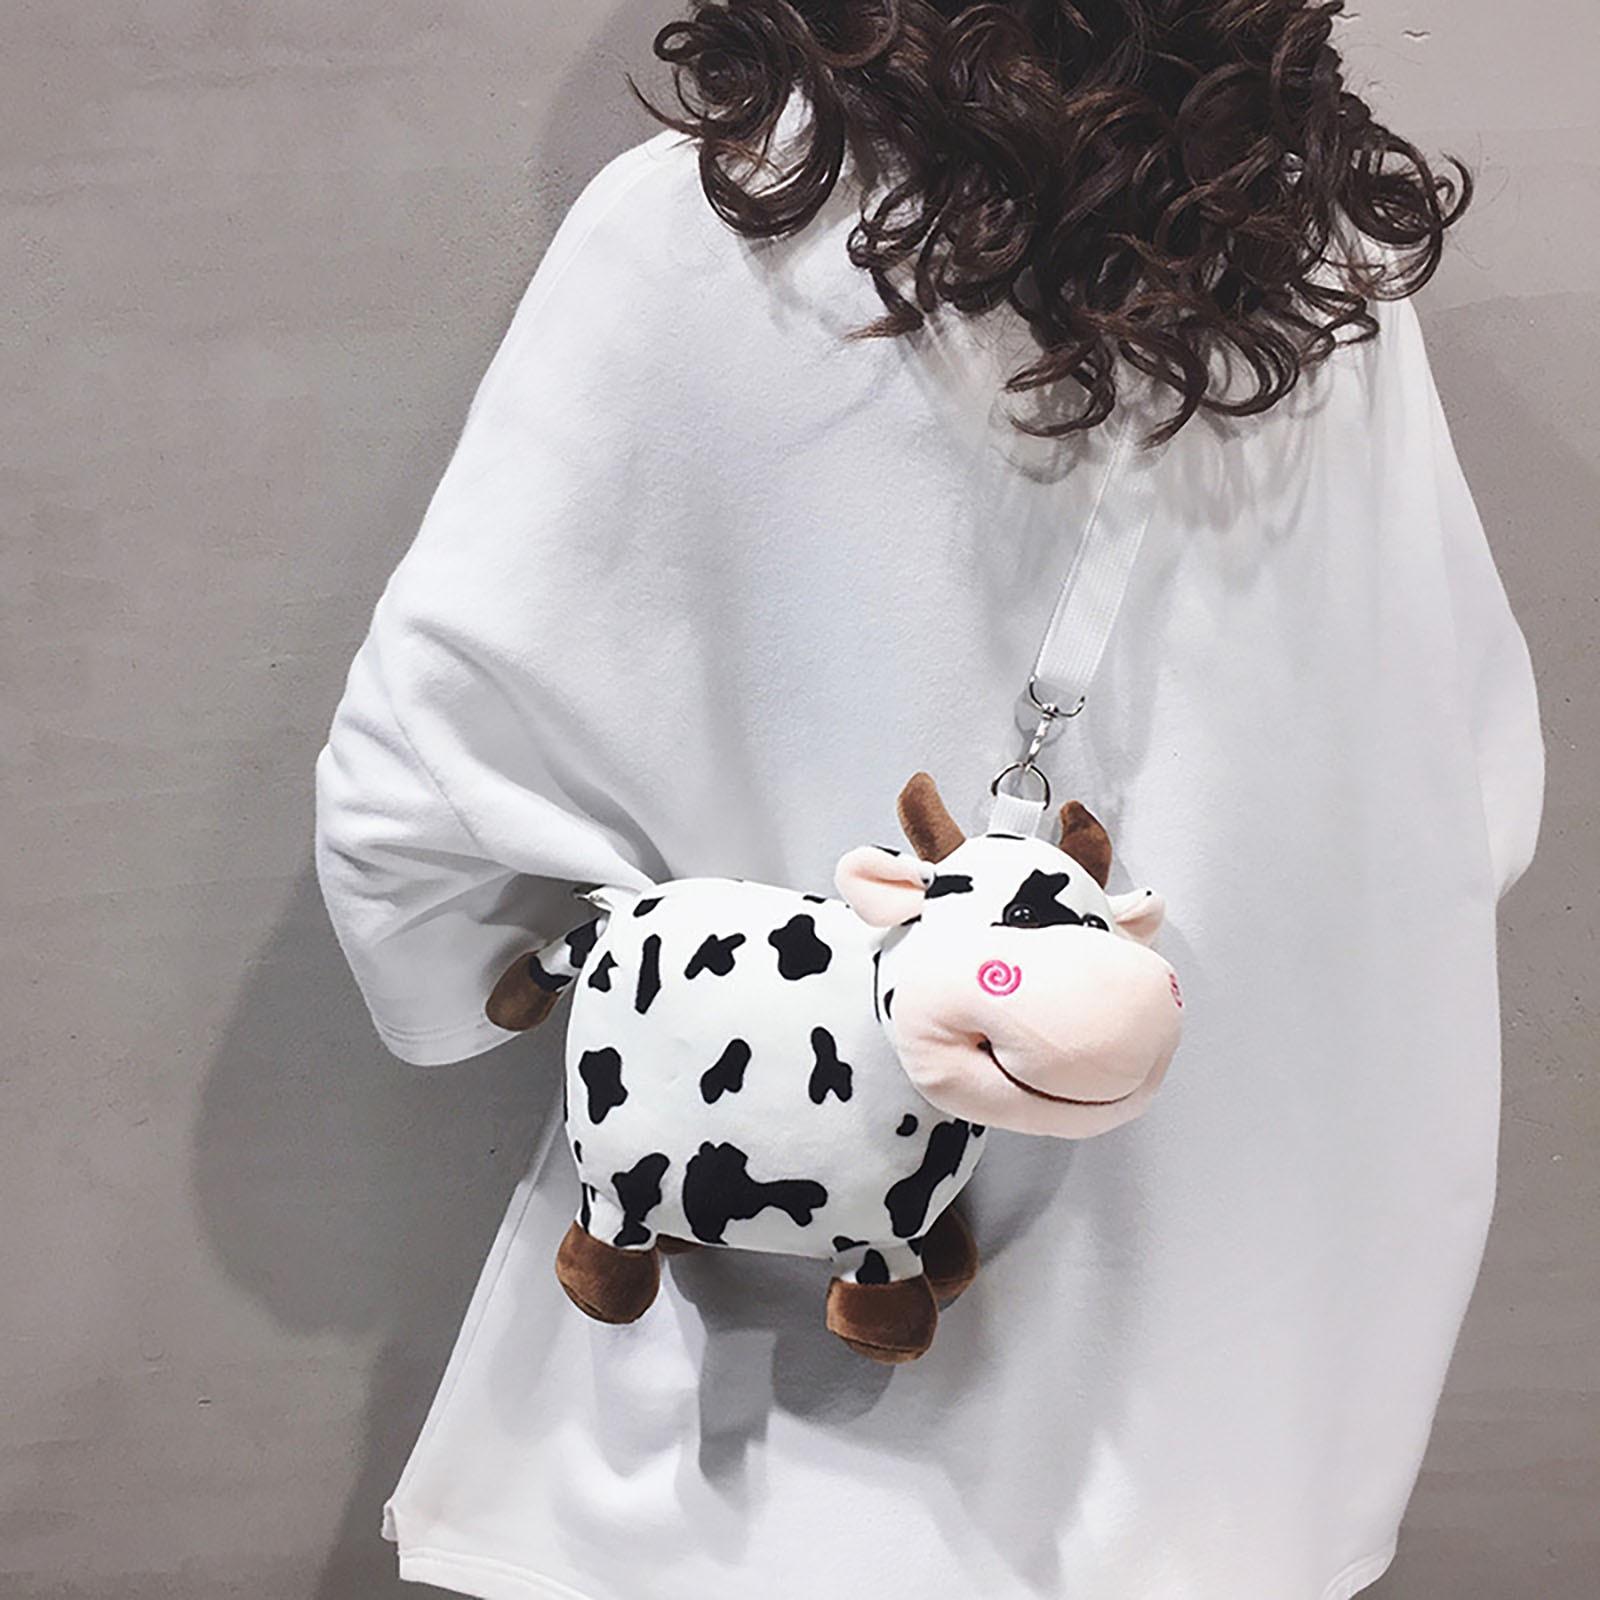 Winnerer Uranus Plush Doll Cow Shoulder Bag Messenger Bag Mobile Phone Bag Messenger Bag